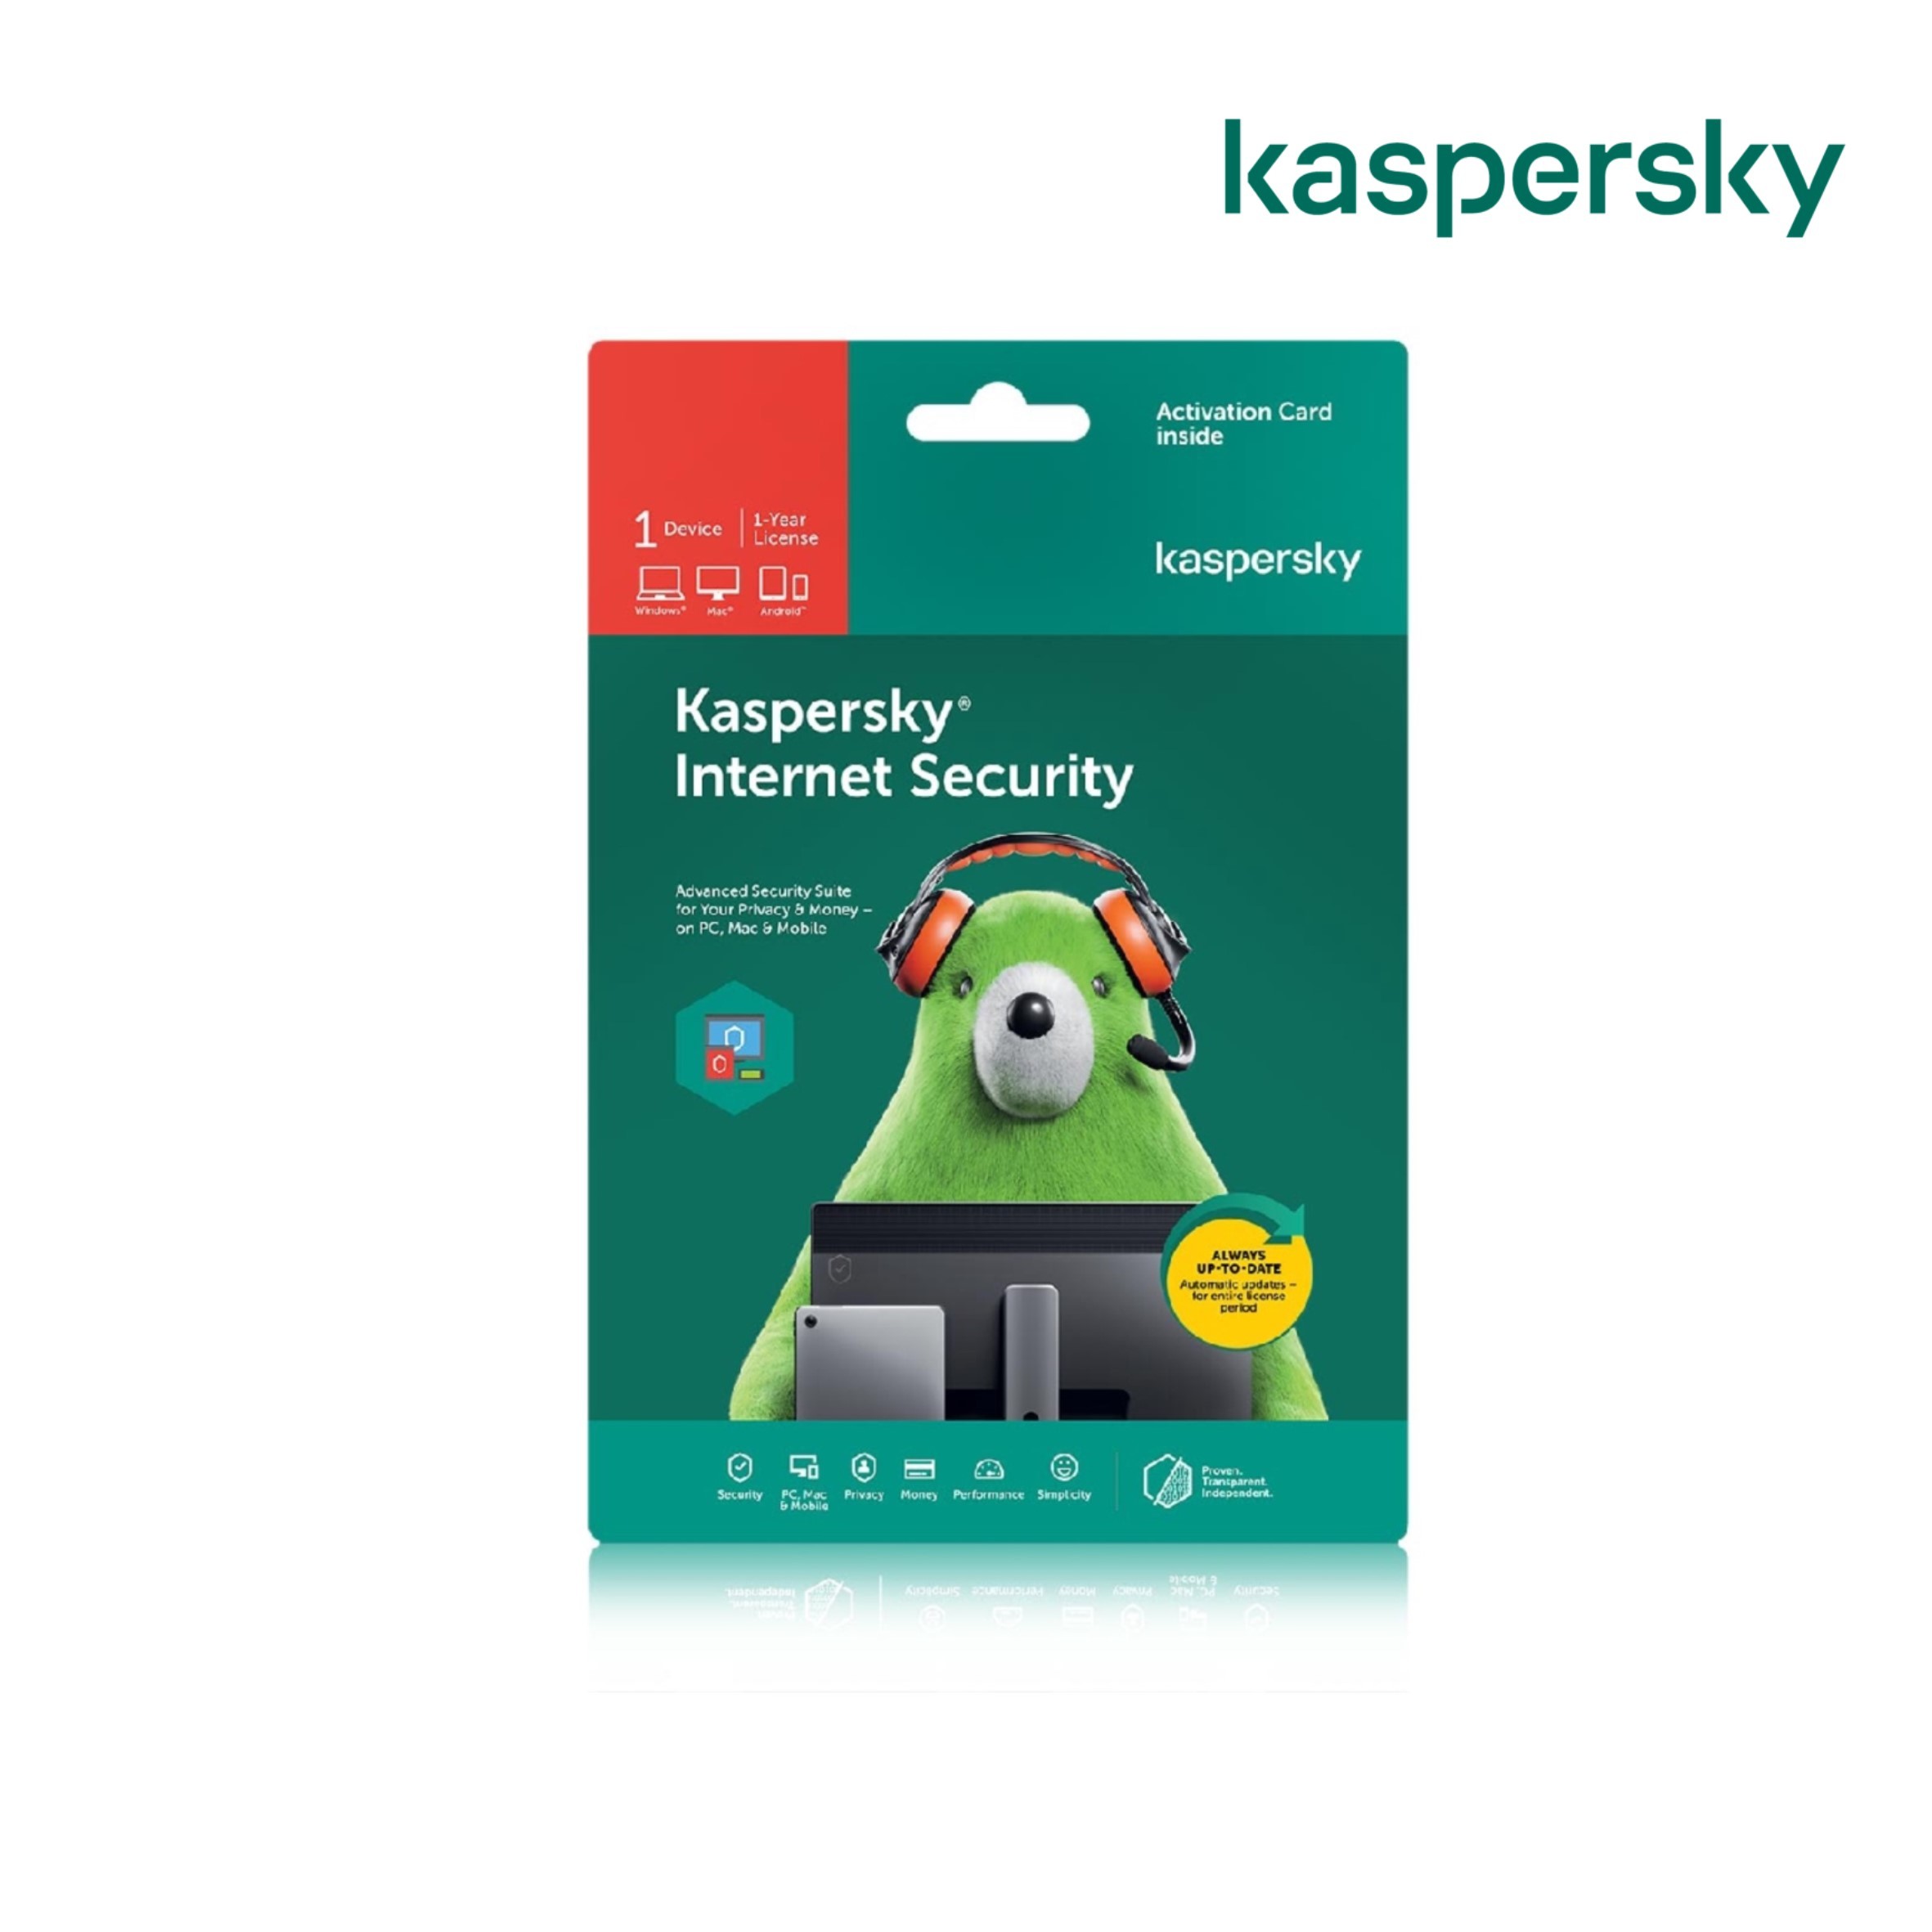 kaspersky software bundle